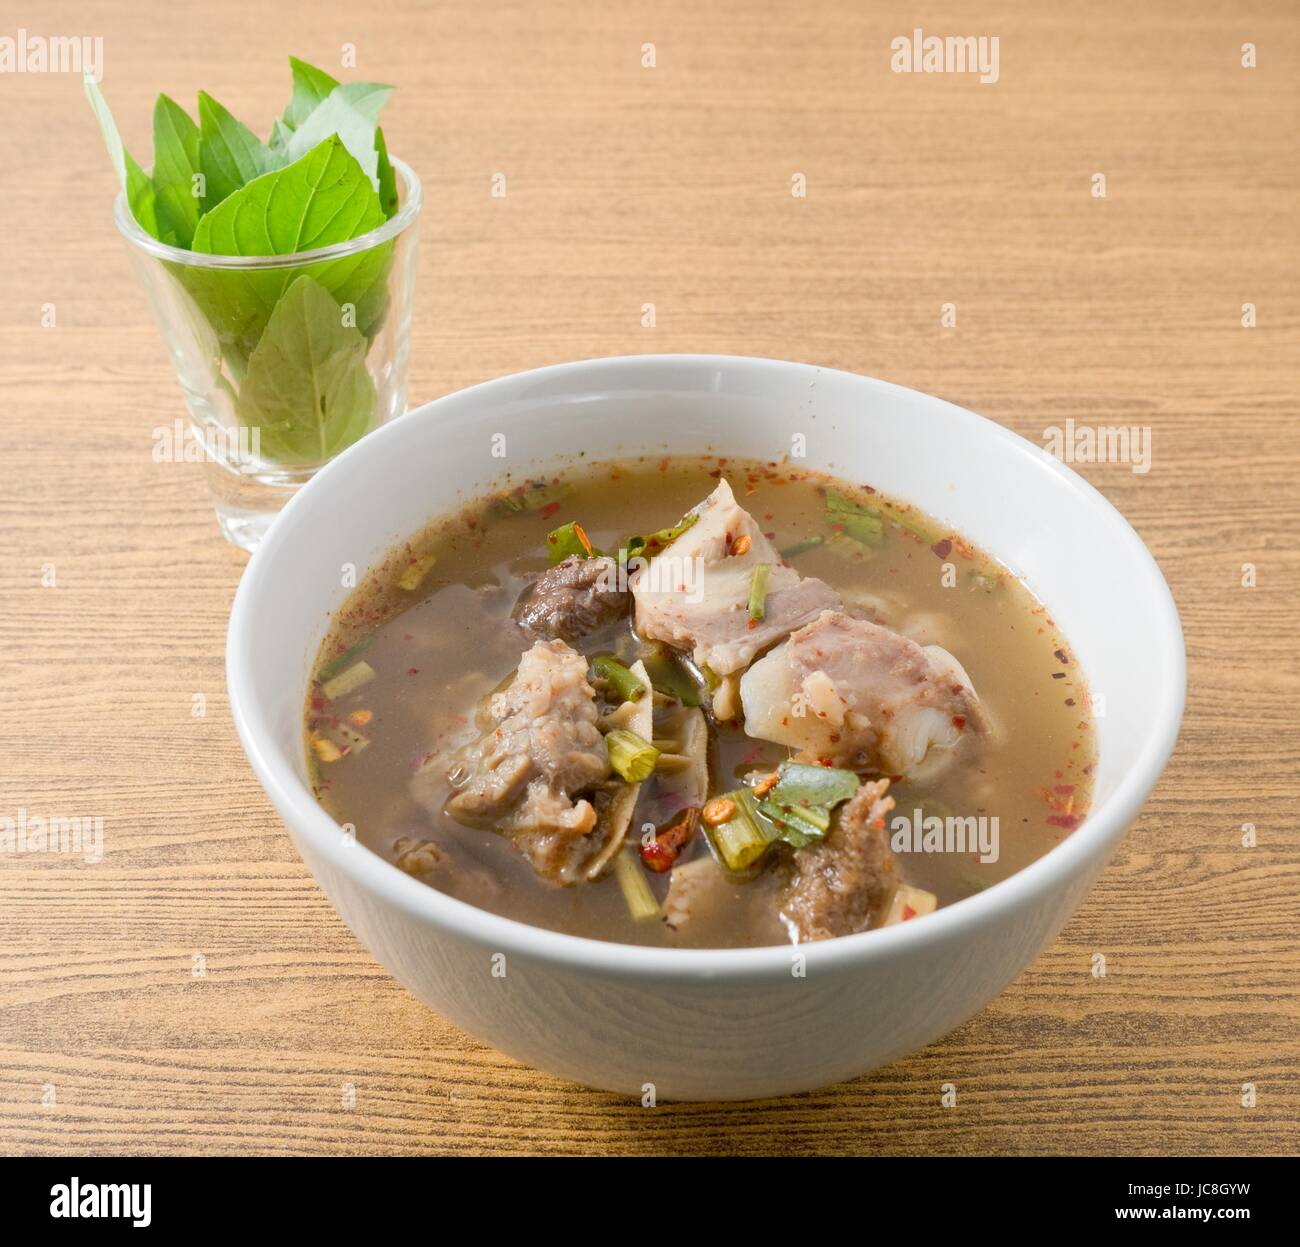 Cucina tailandese e cibo, una ciotola di deliziosi piatti Thai piccante chiara e calda zuppa acida con le interiora dei bovini. Foto Stock